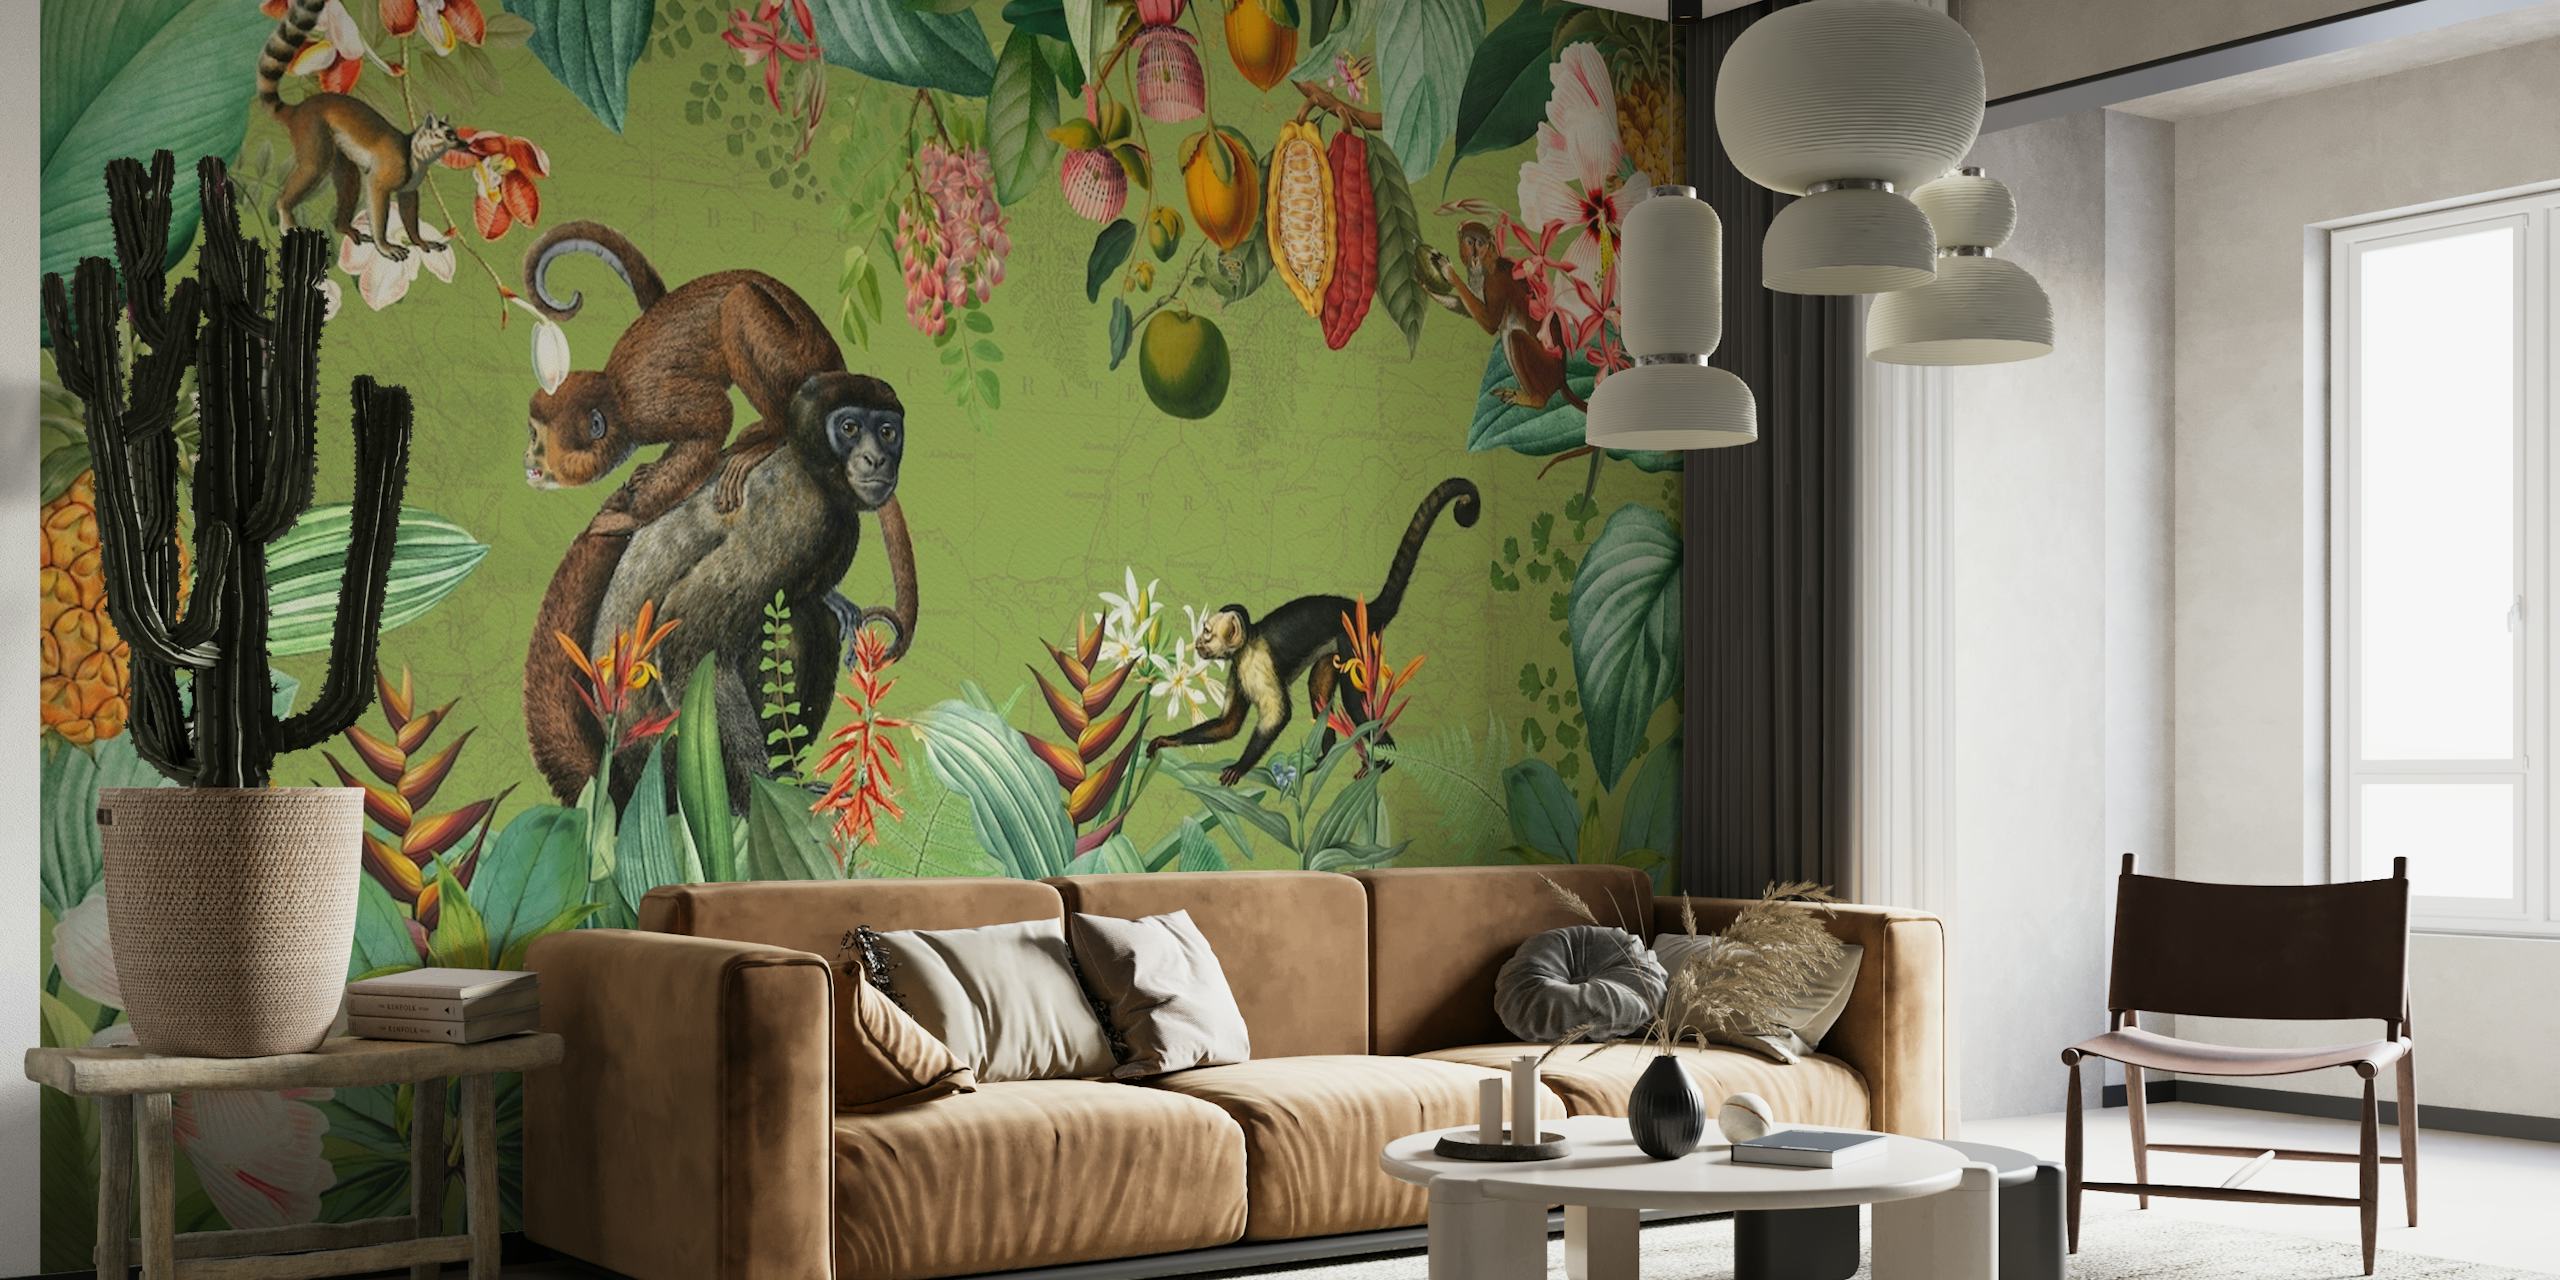 Vintage-tyylinen seinämaalaus, joka kuvaa apinoita ja trooppisia kasveja afrikkalaisessa viidakossa